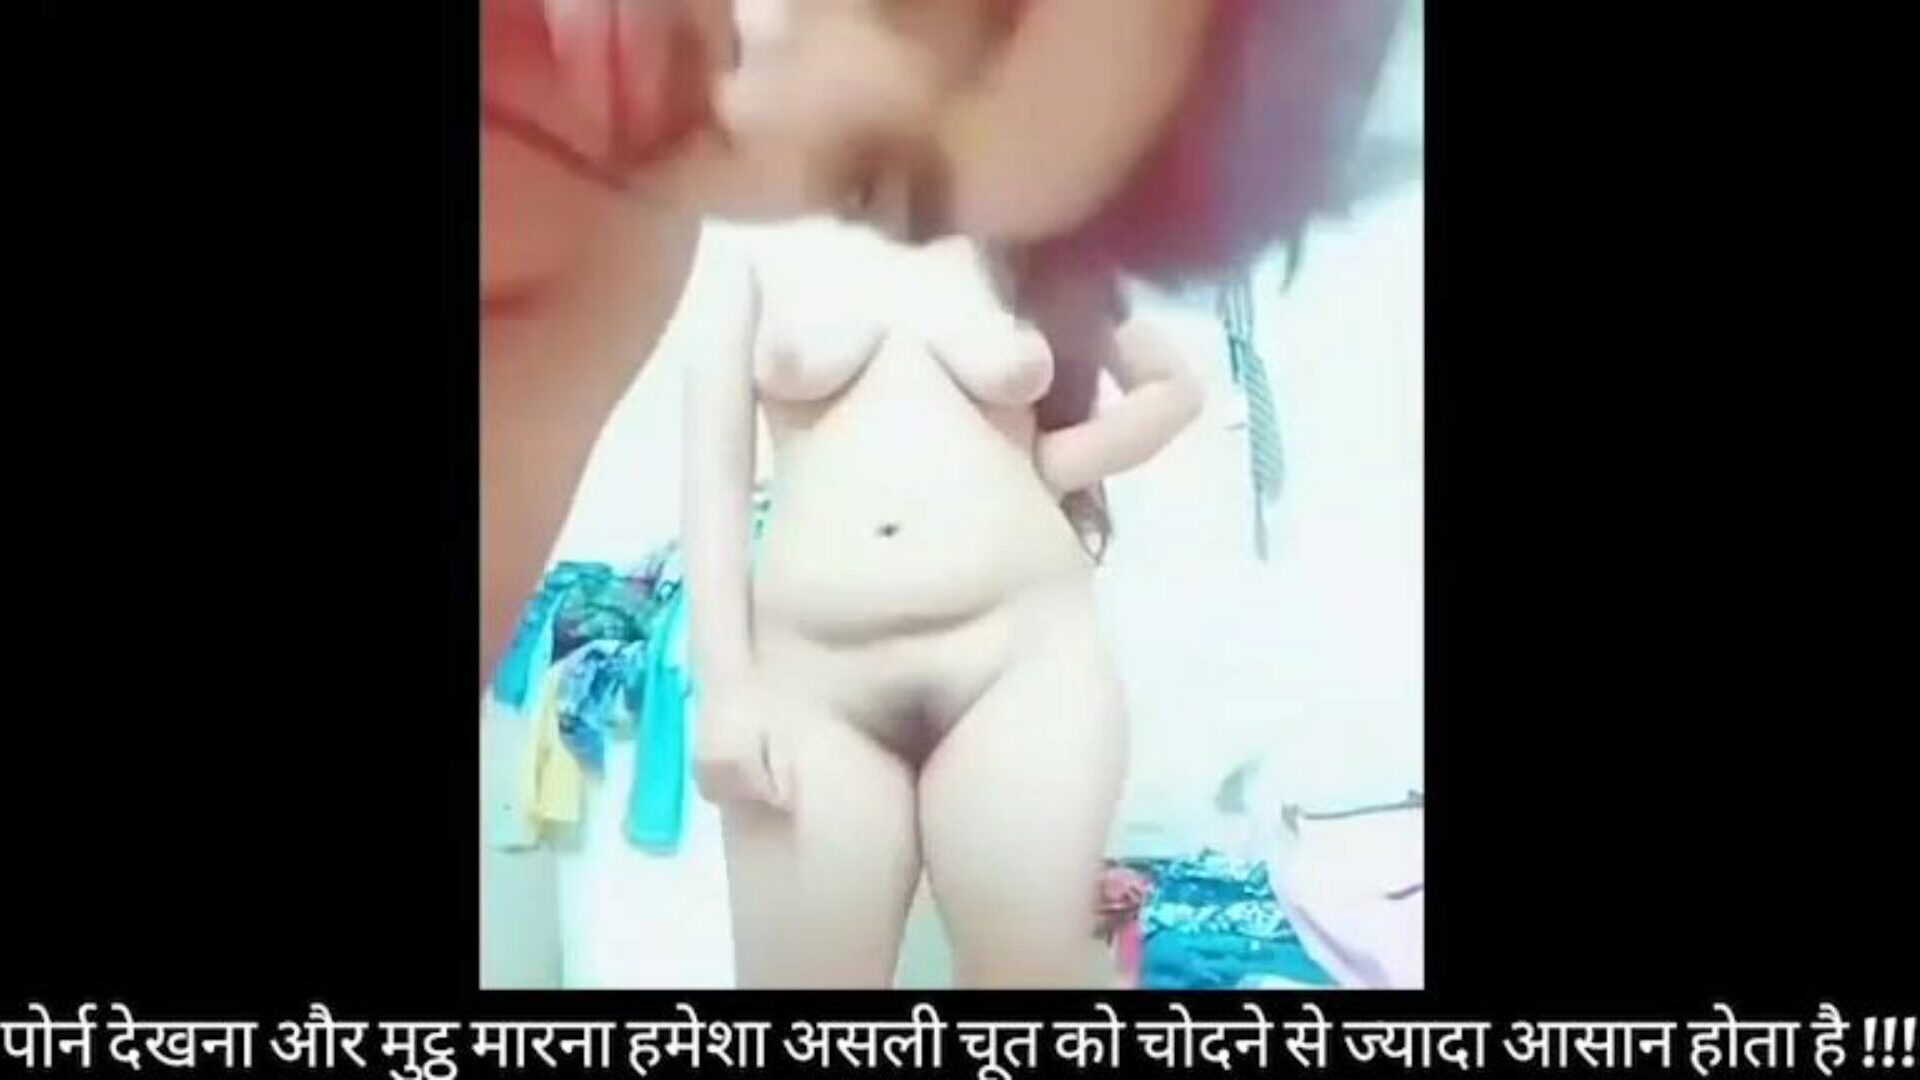 słodka studentka z Bangladeszu uprawia seks z najlepszym przyjacielem chłopaka słodka dziwka kolaż dziewczyna zerżnięta z chłopakiem sztywno